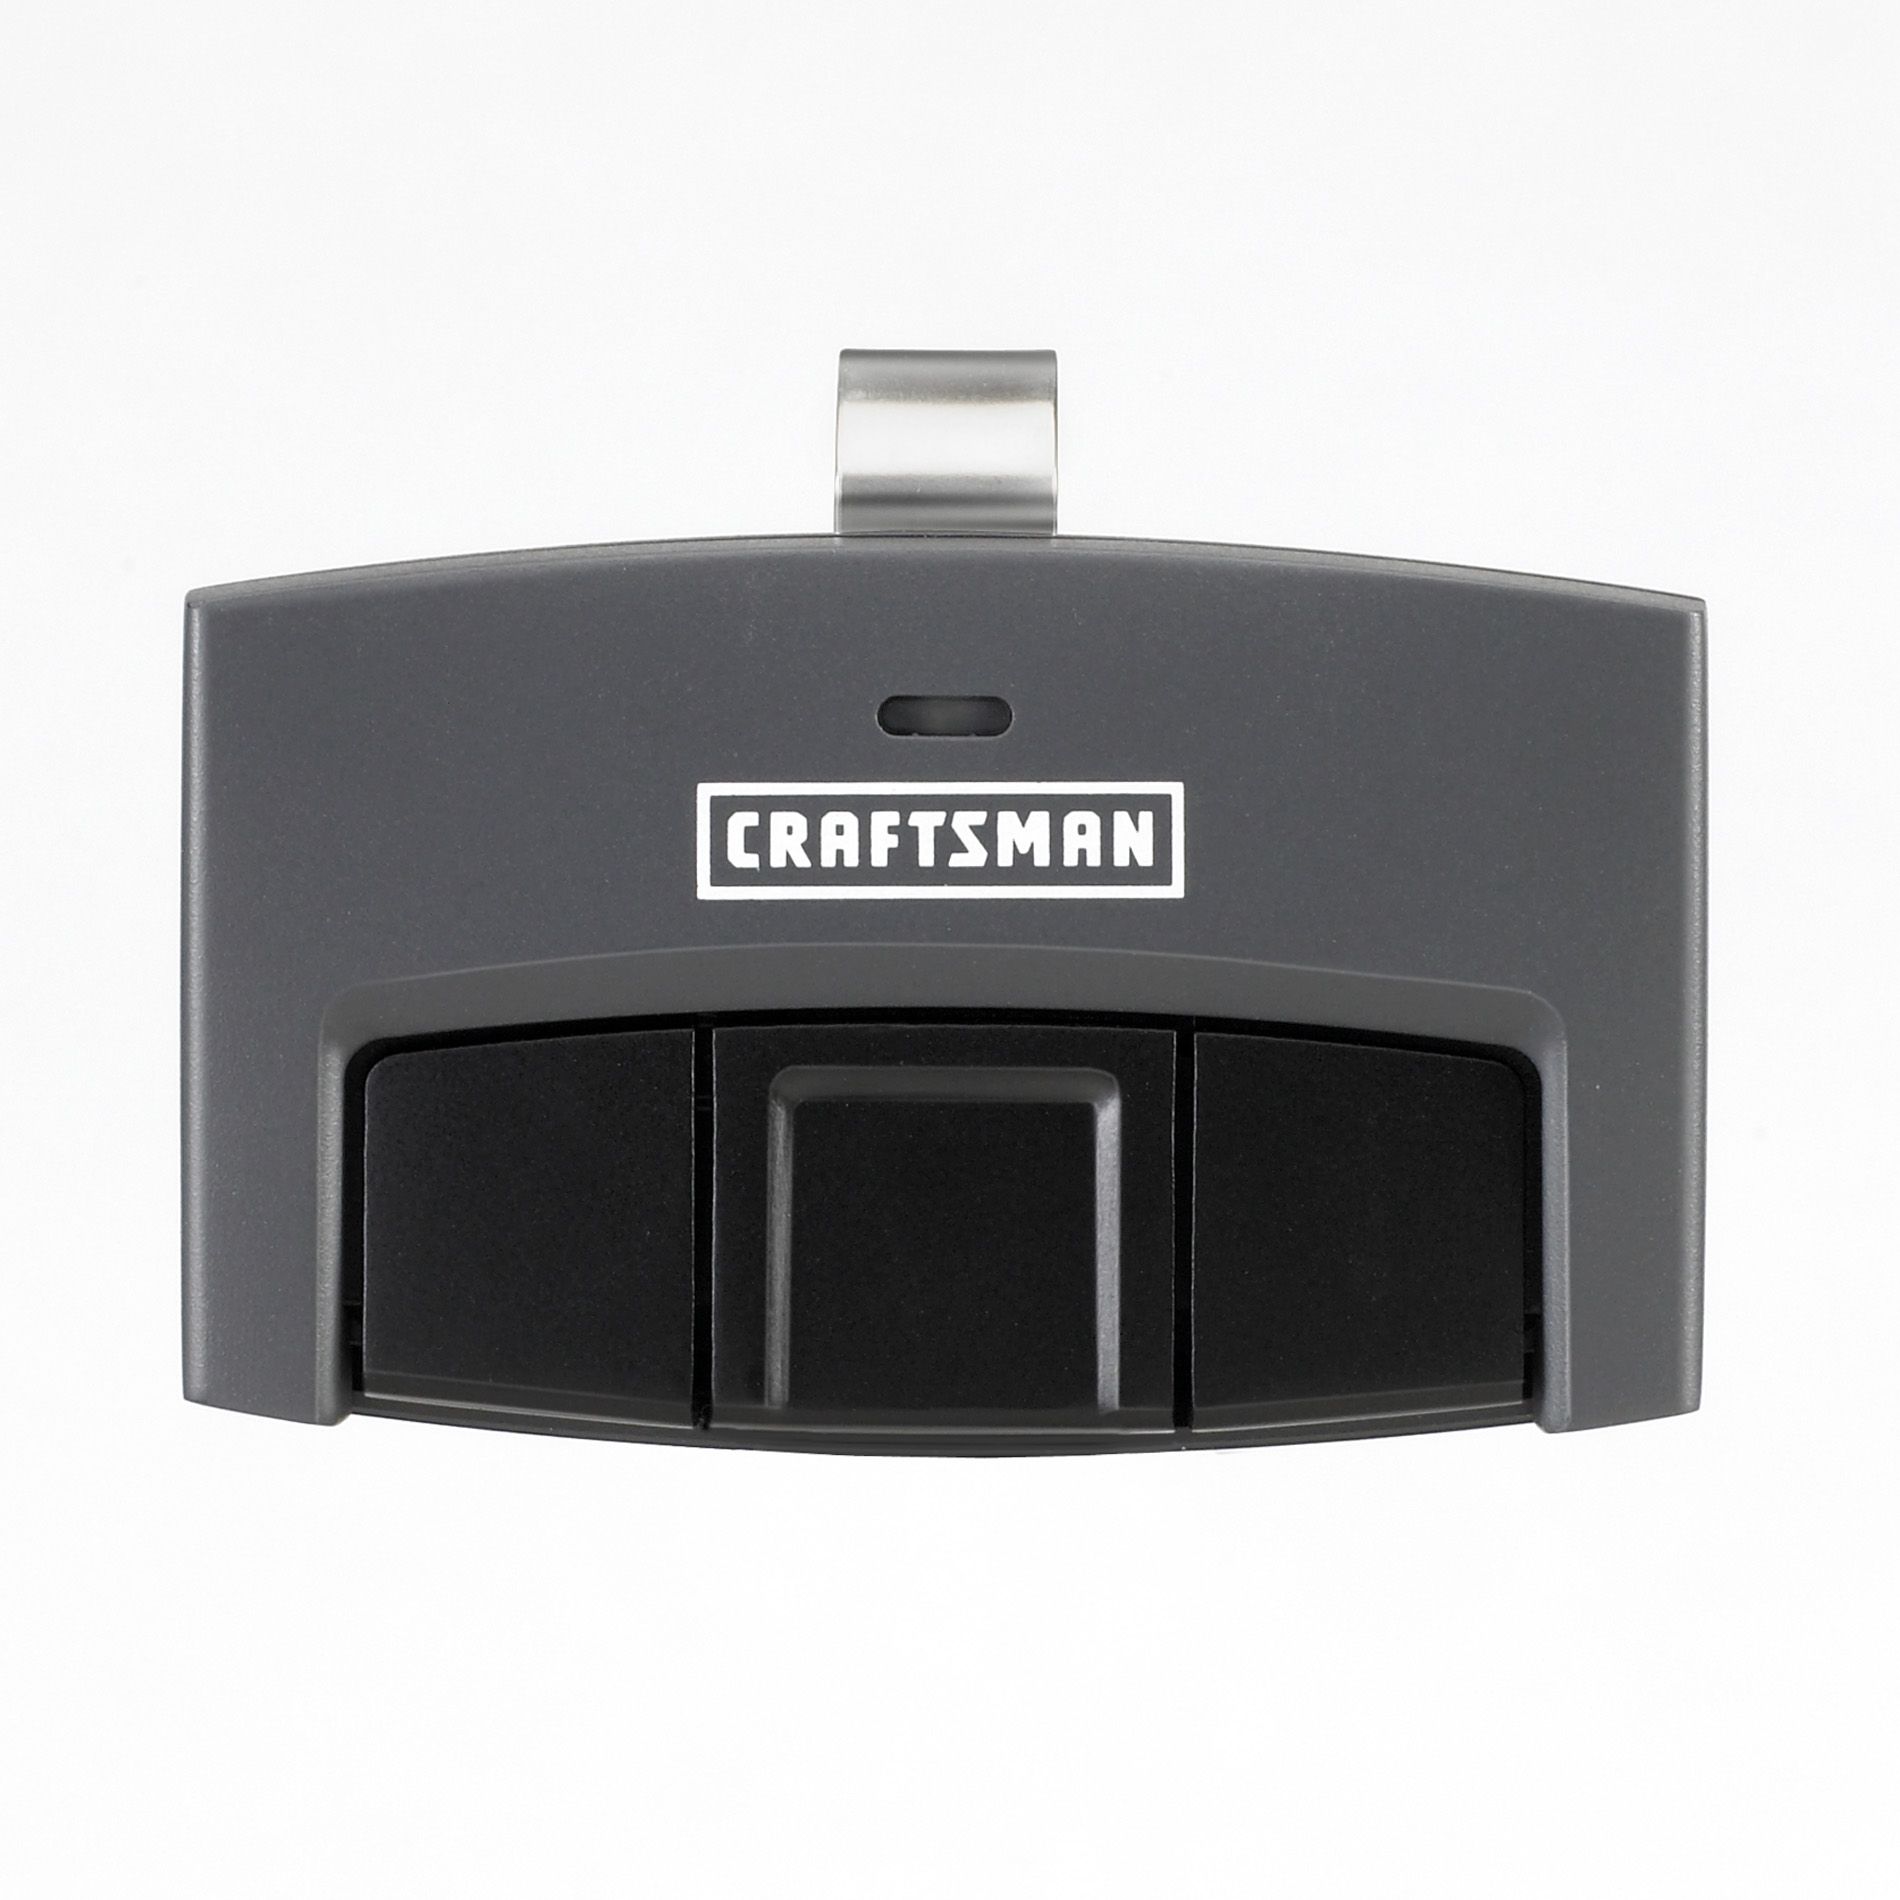 Craftsman 3Function Visor Remote Control Garage Door